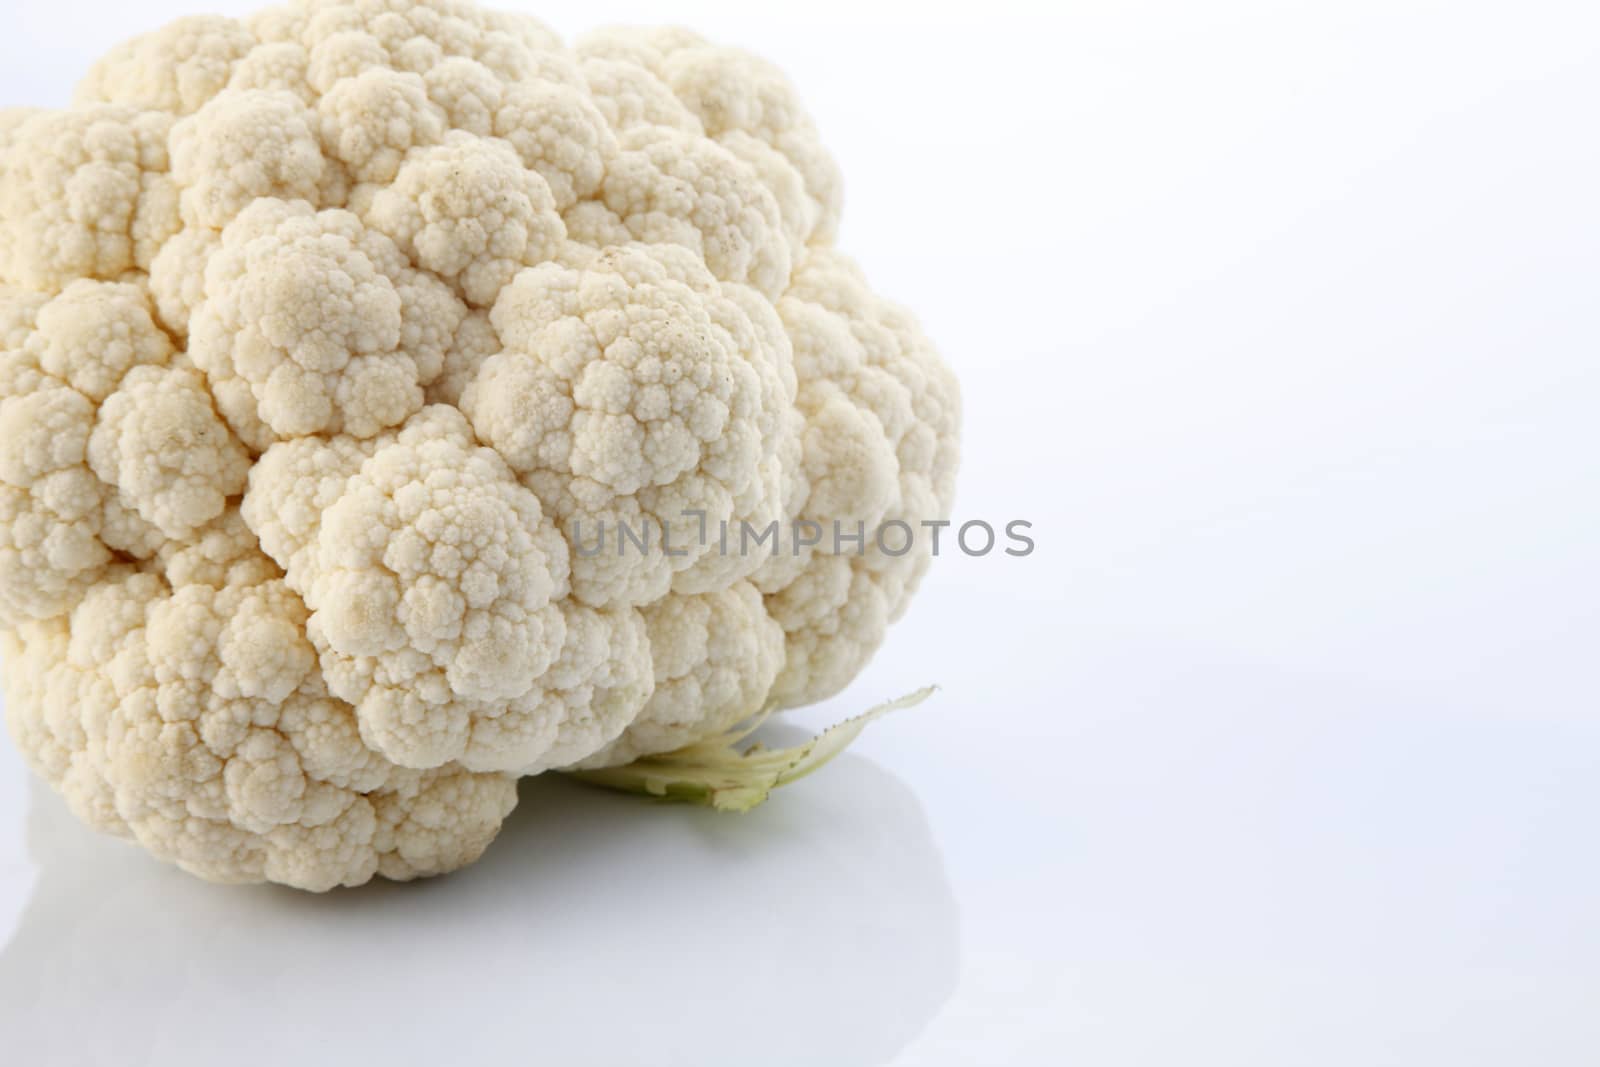 Cauliflower by eskaylim